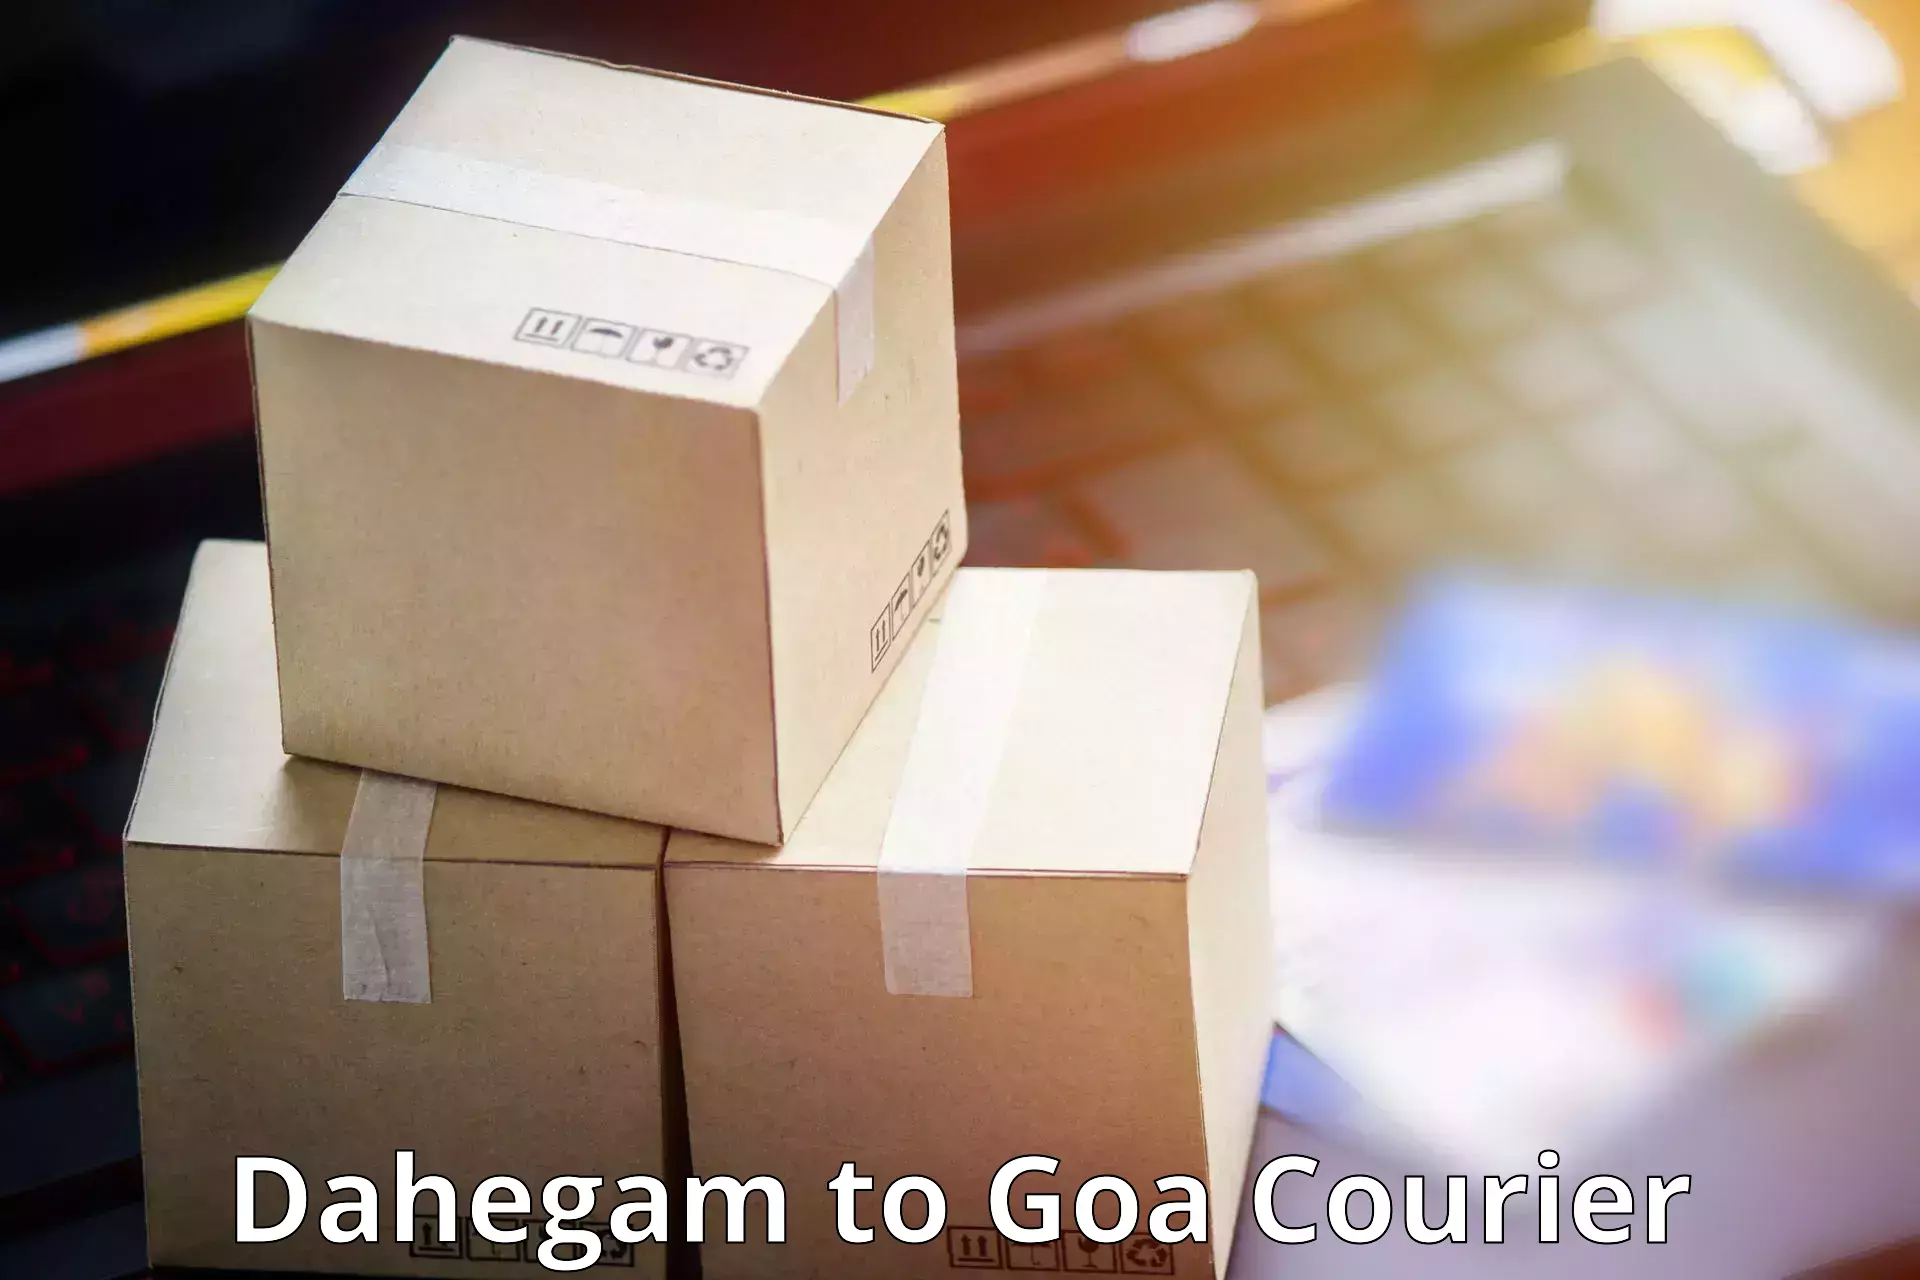 Reliable courier service Dahegam to Goa